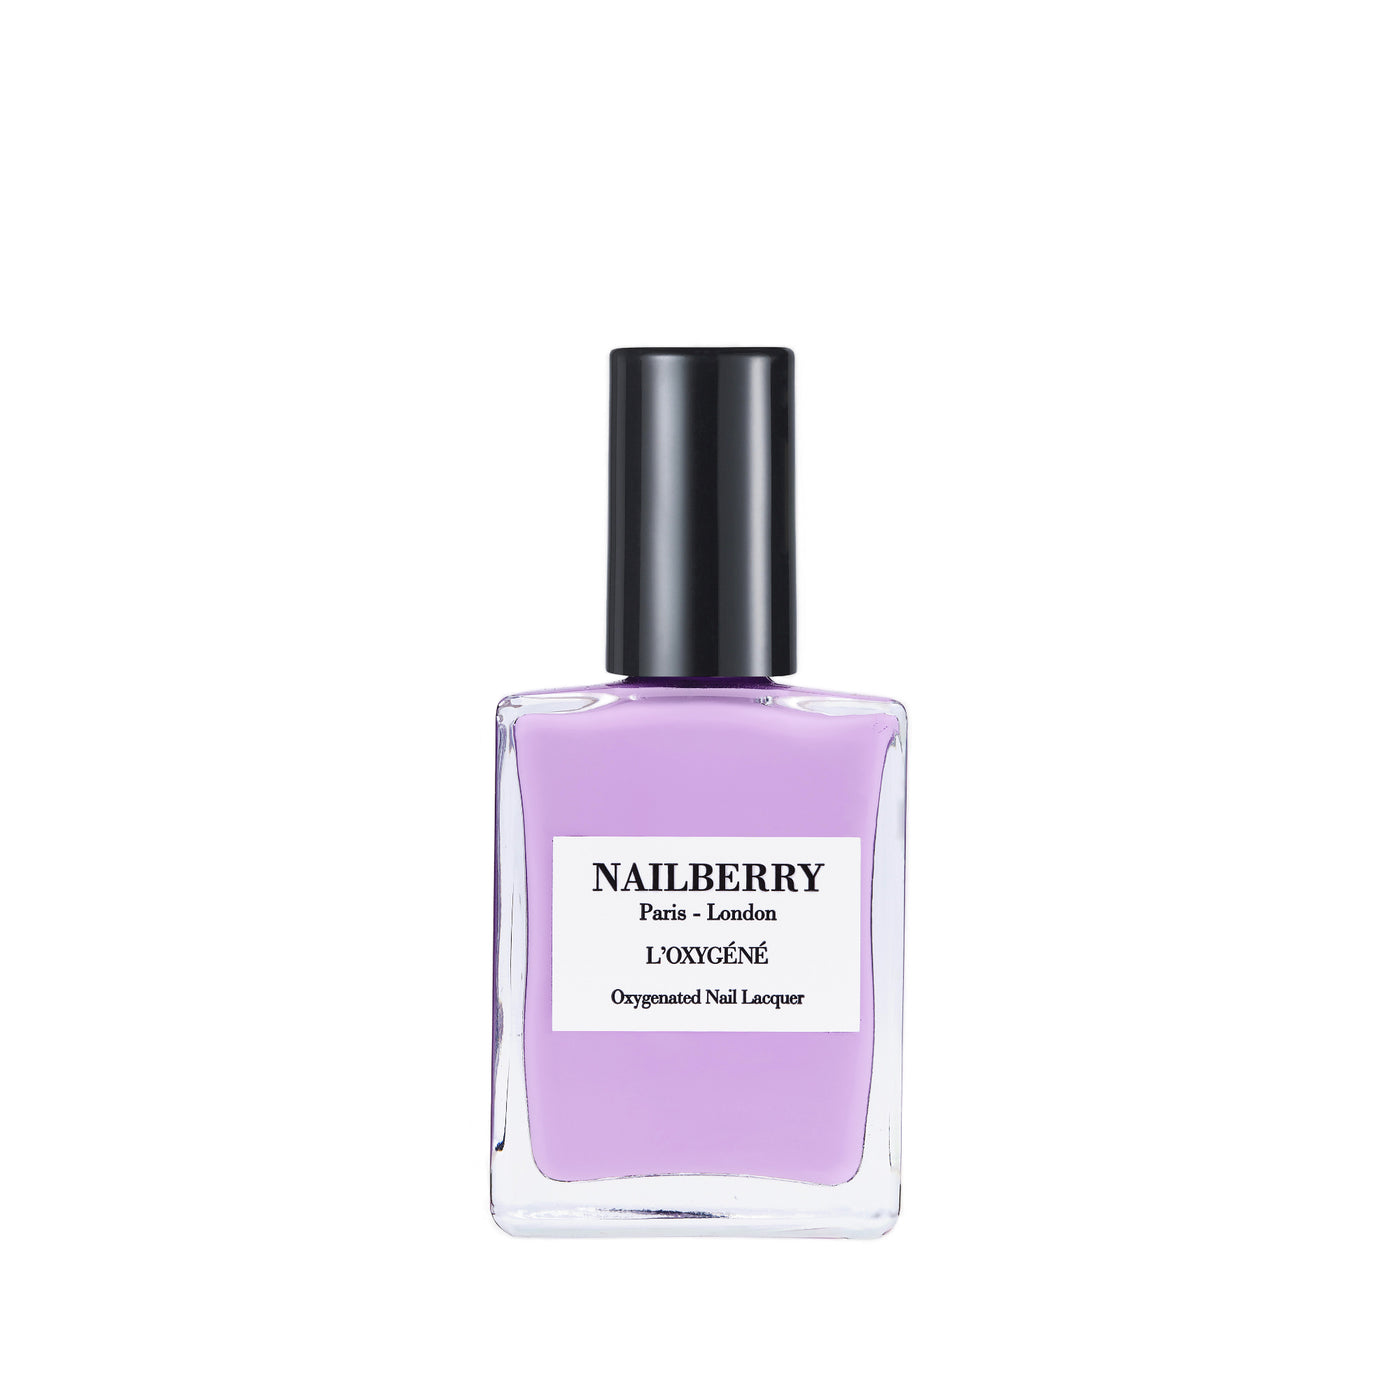 Nailberry neglelak, lavender fields